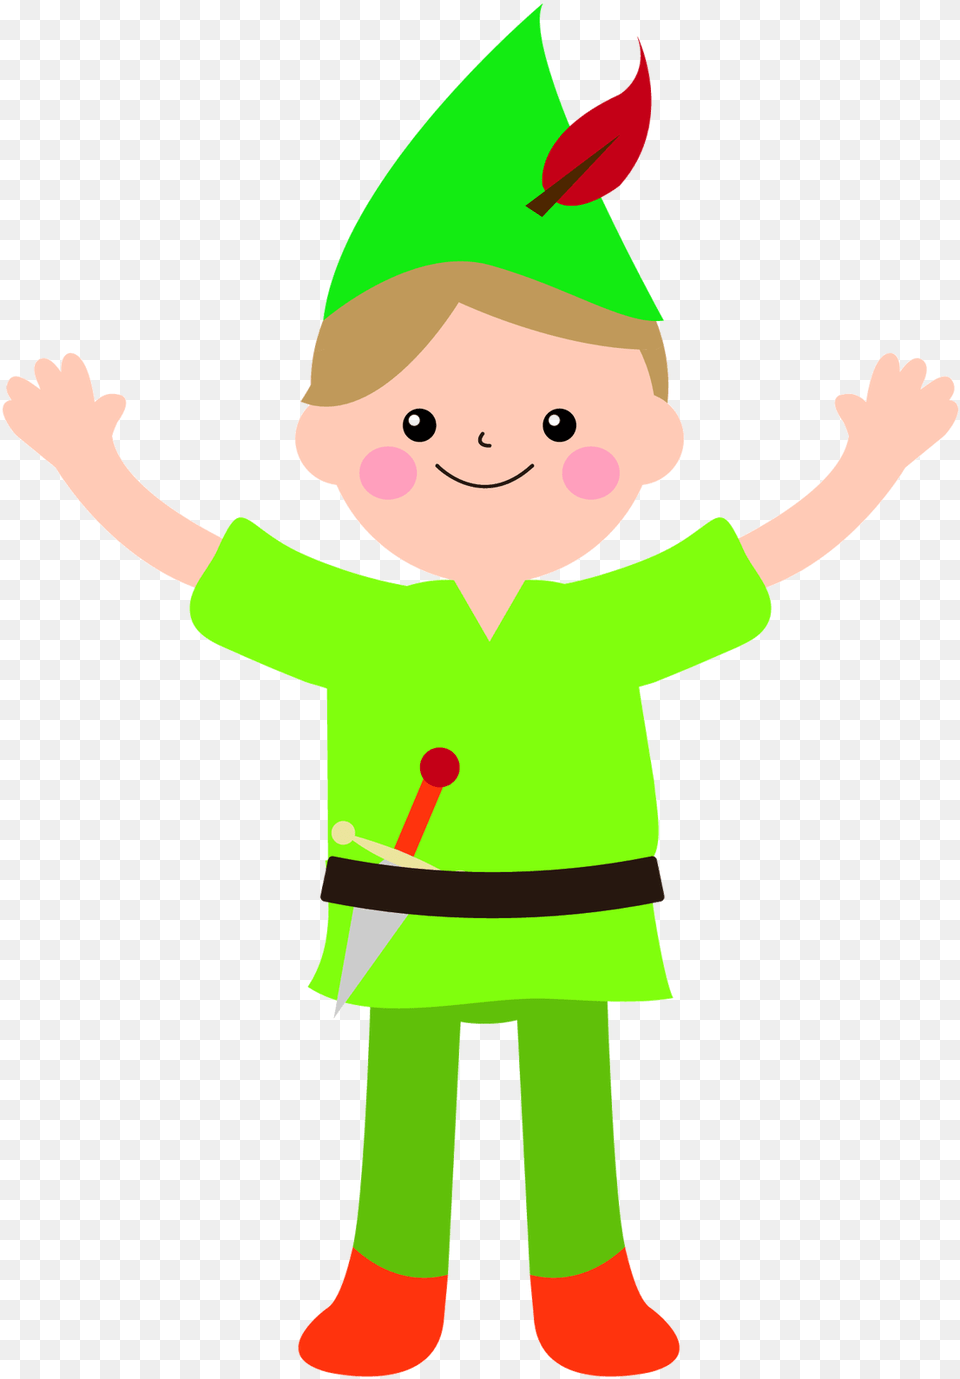 Lyric Drawing Peter Pan Peter Pan Kid Drawing, Clothing, Costume, Elf, Person Png